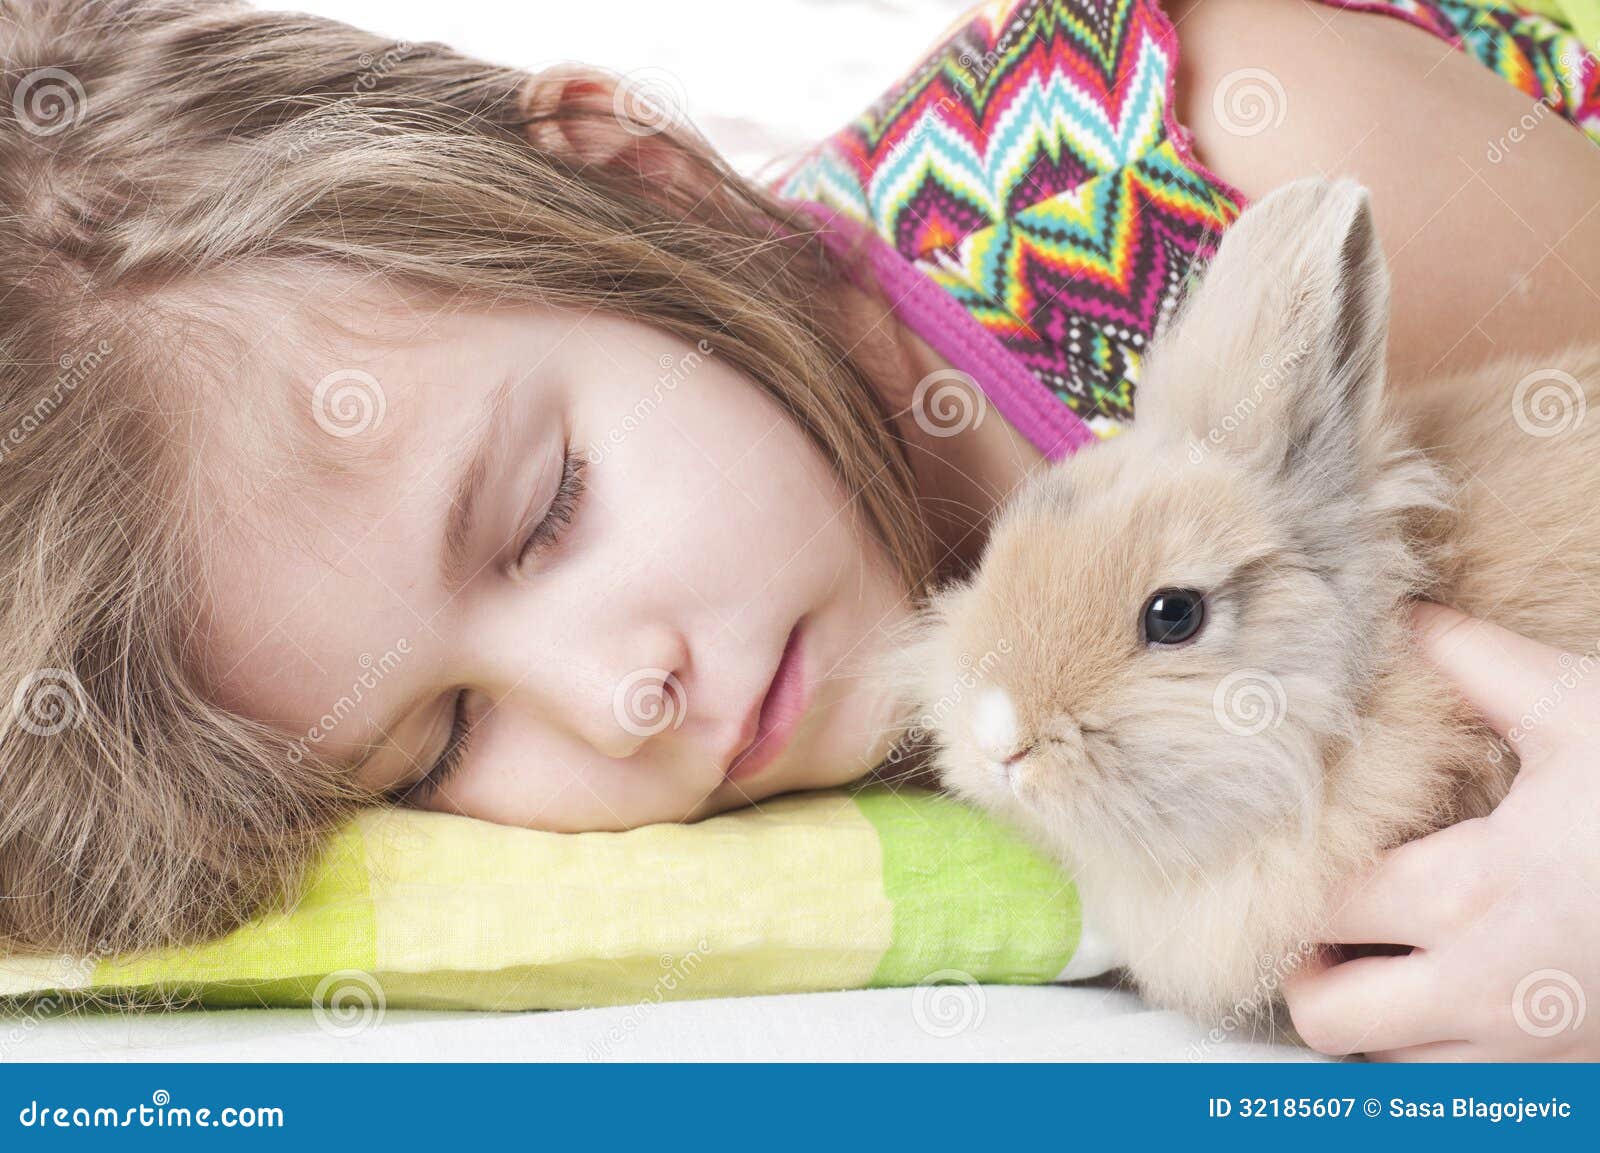 和小兔子一起的可爱女生壁纸图片